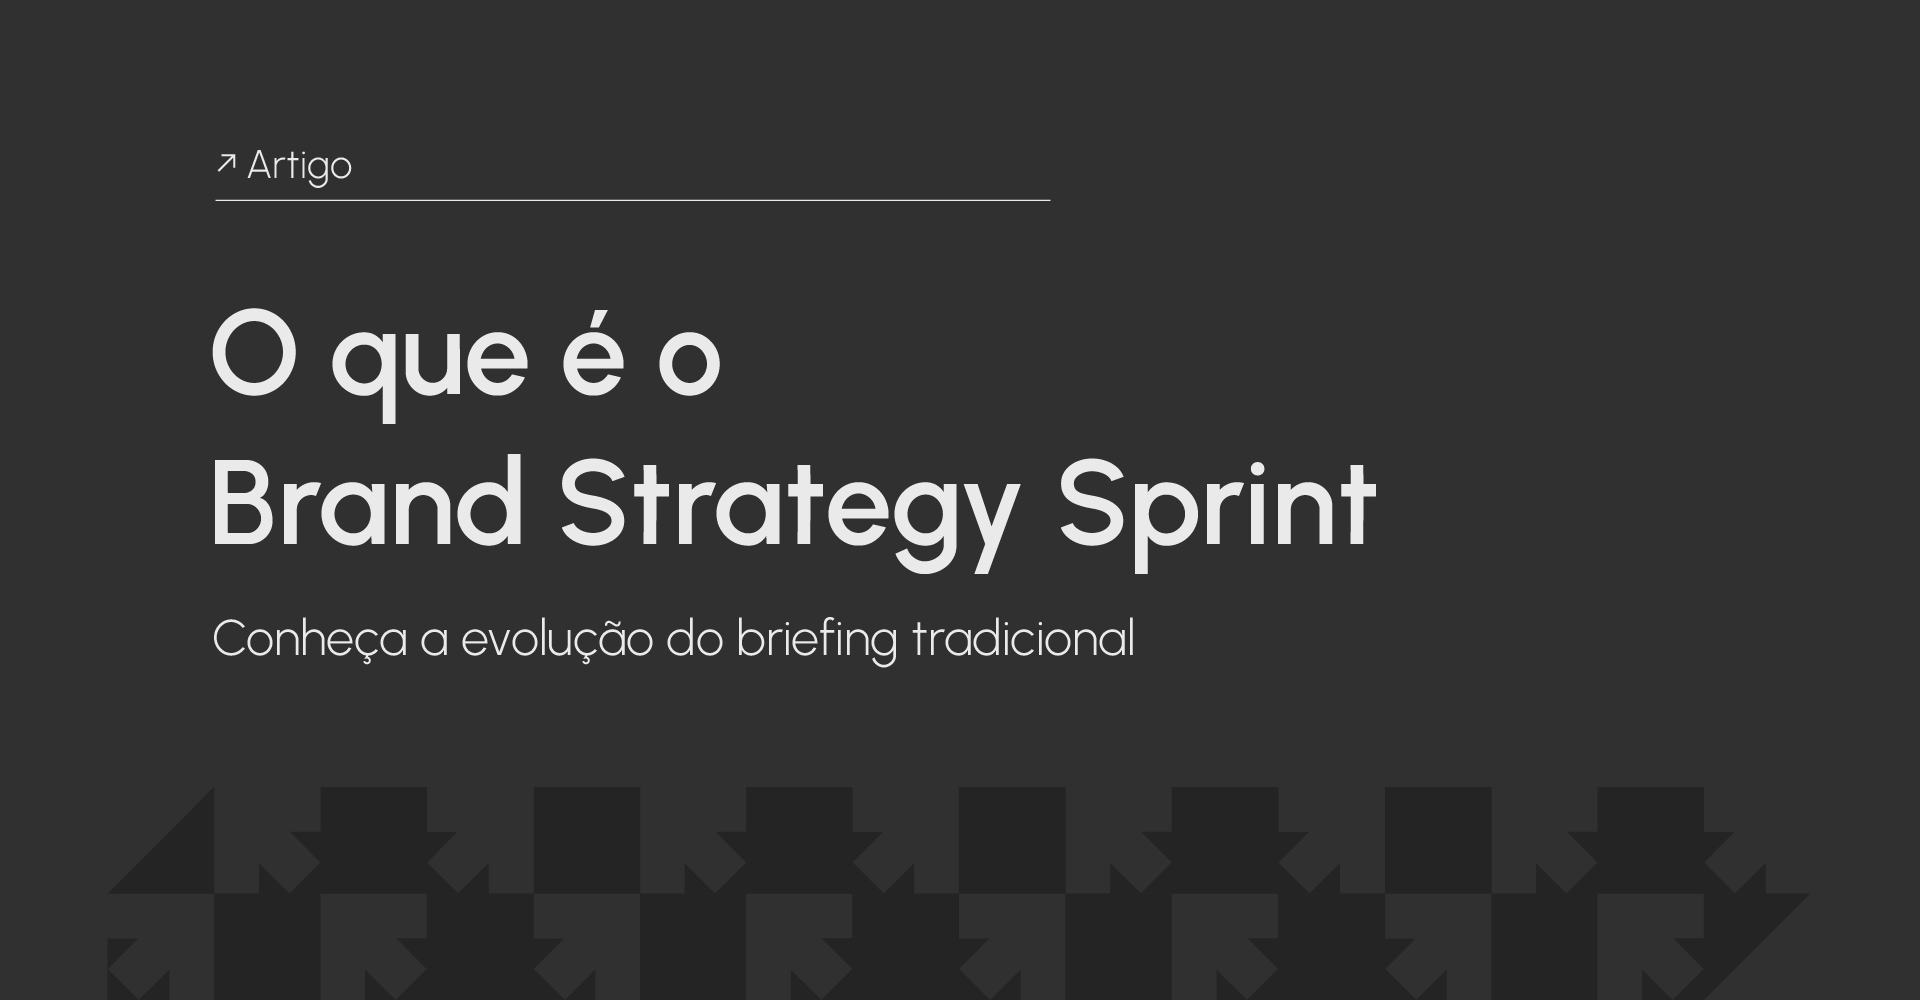 Brand Strategy Sprint